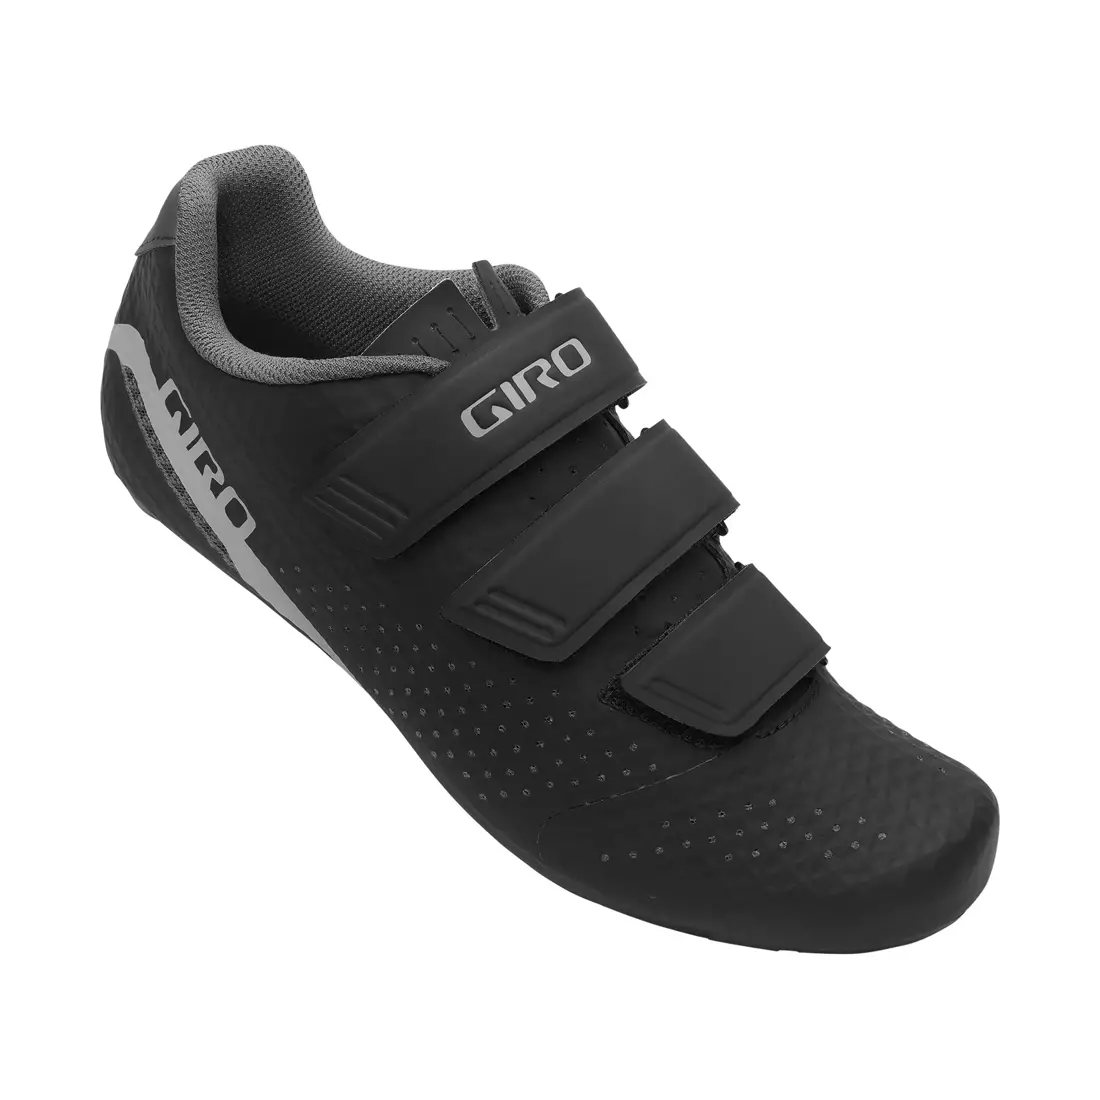 GIRO dámska cyklistická obuv STYLUS W black